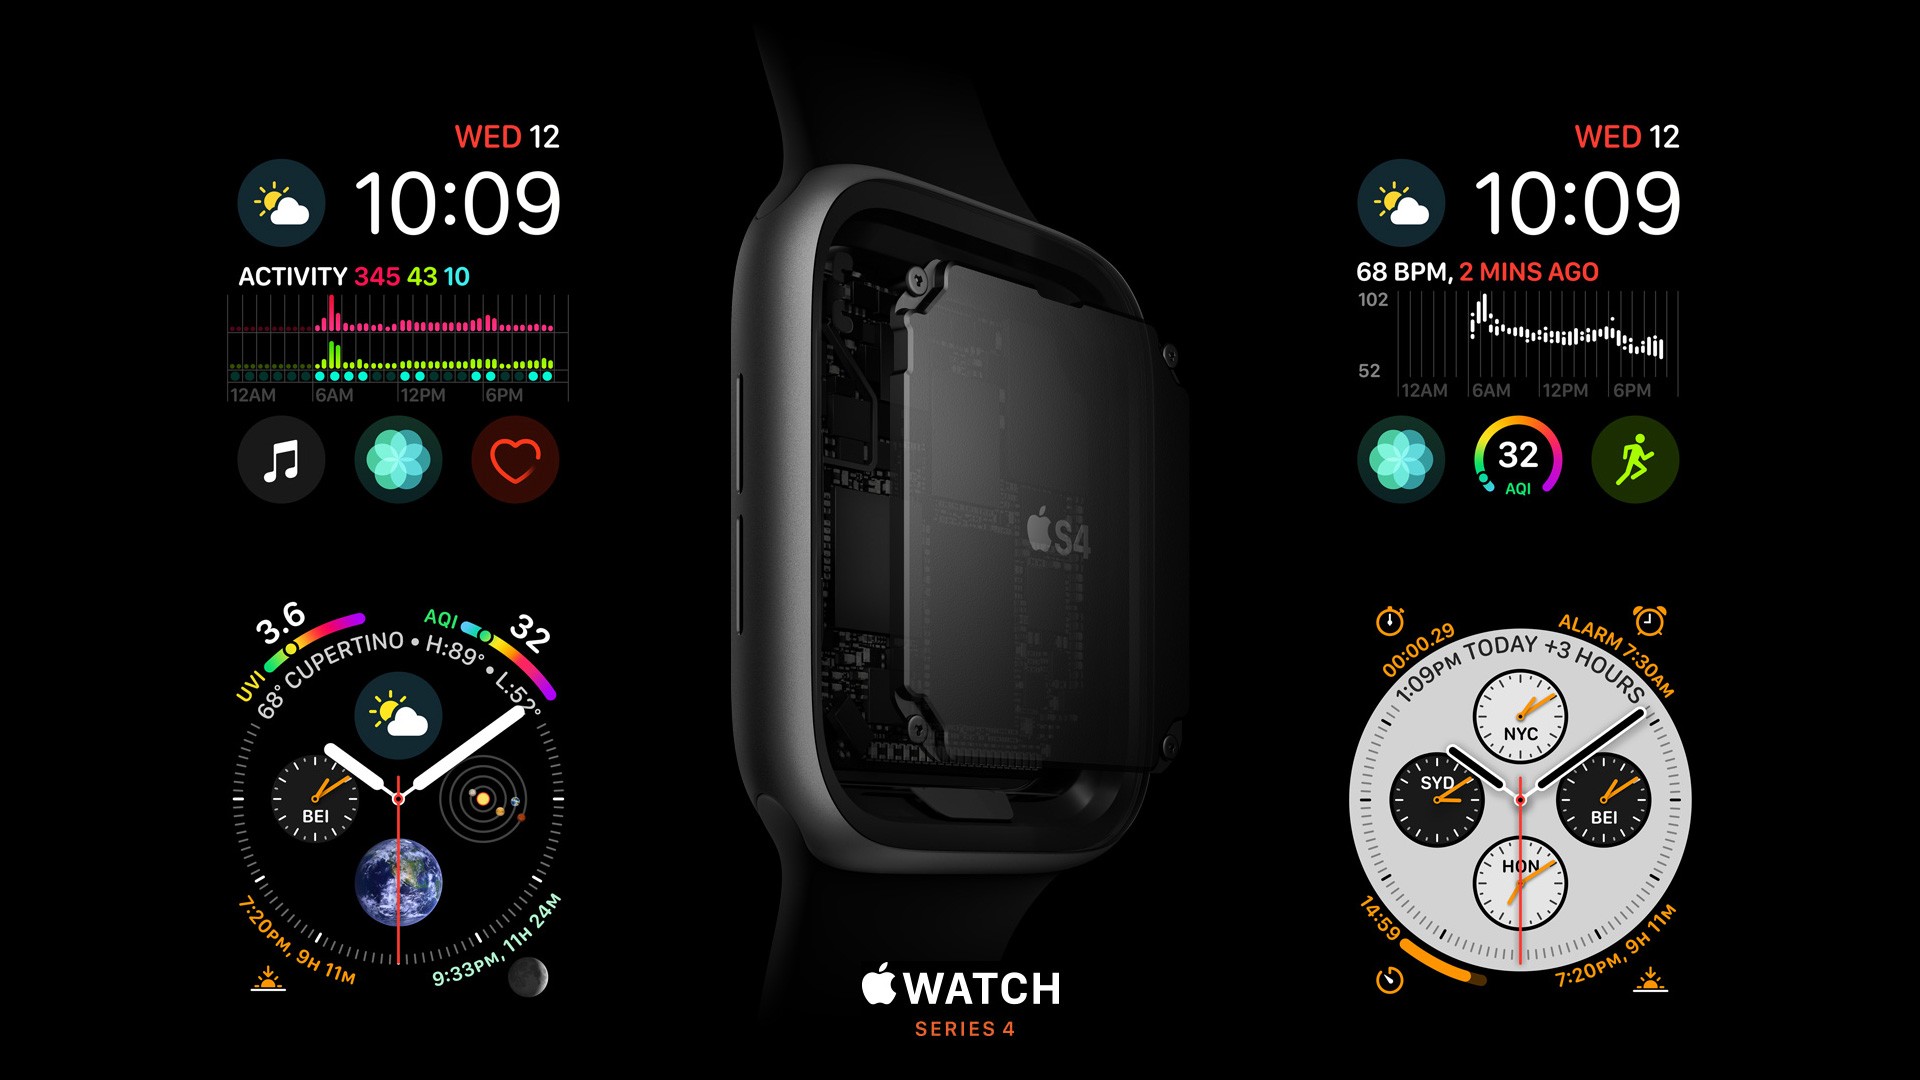 apple watch fond d'écran hd,gadget,la technologie,police de caractère,dispositif de communication,capture d'écran